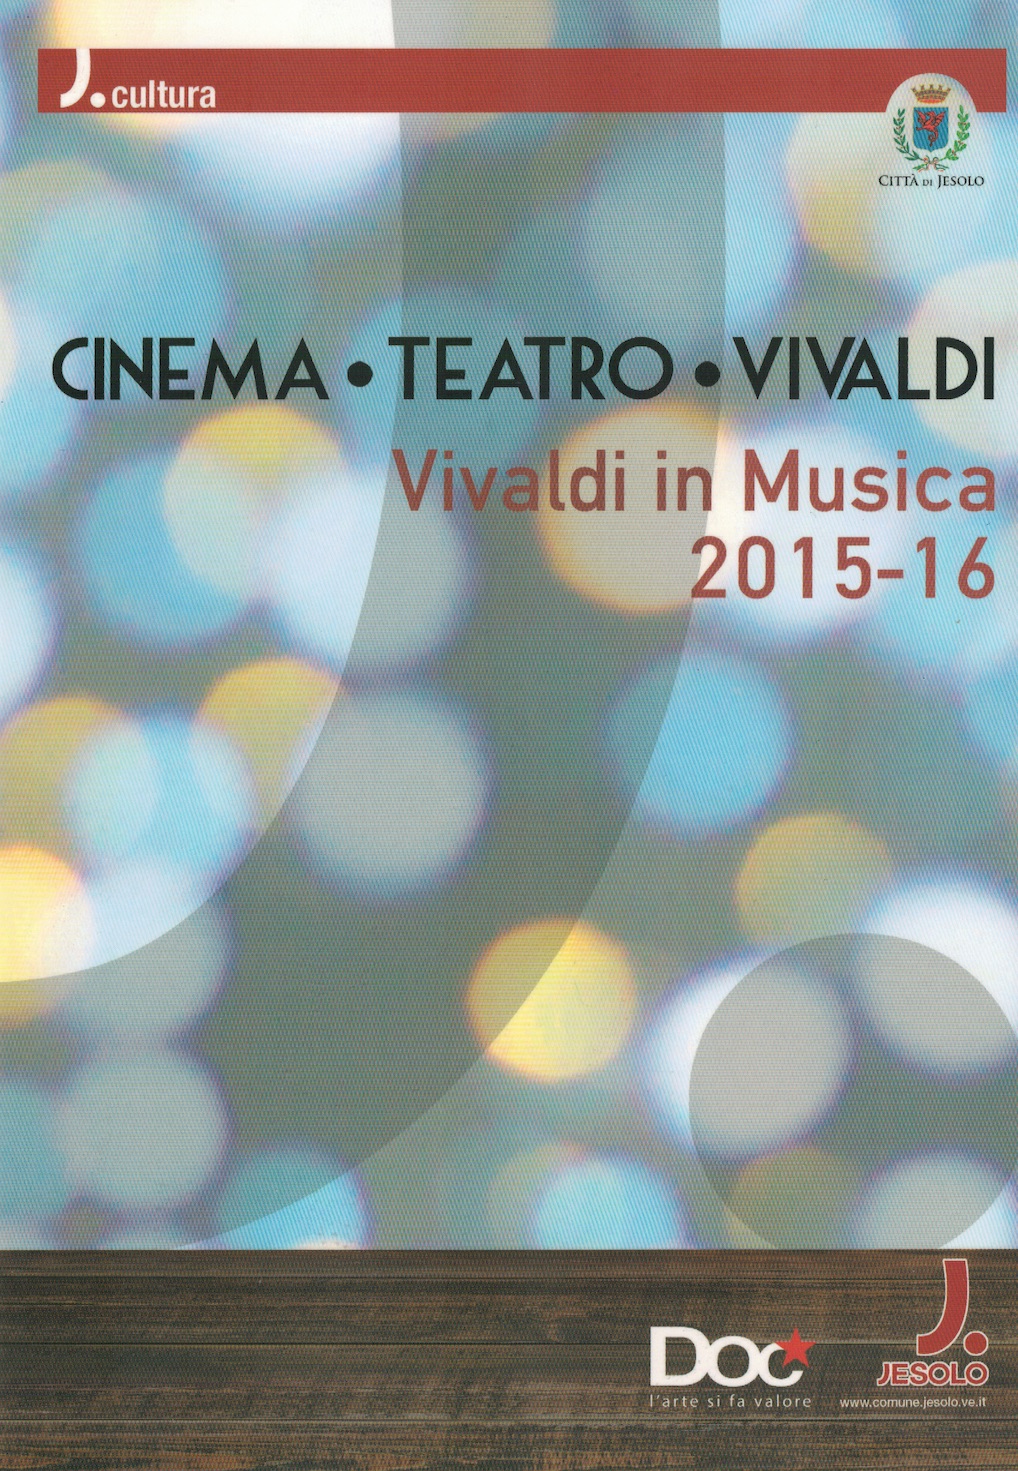 Quinteto Porteño Live @ Vivaldi in Musica Teatro Vivaldi Jesolo